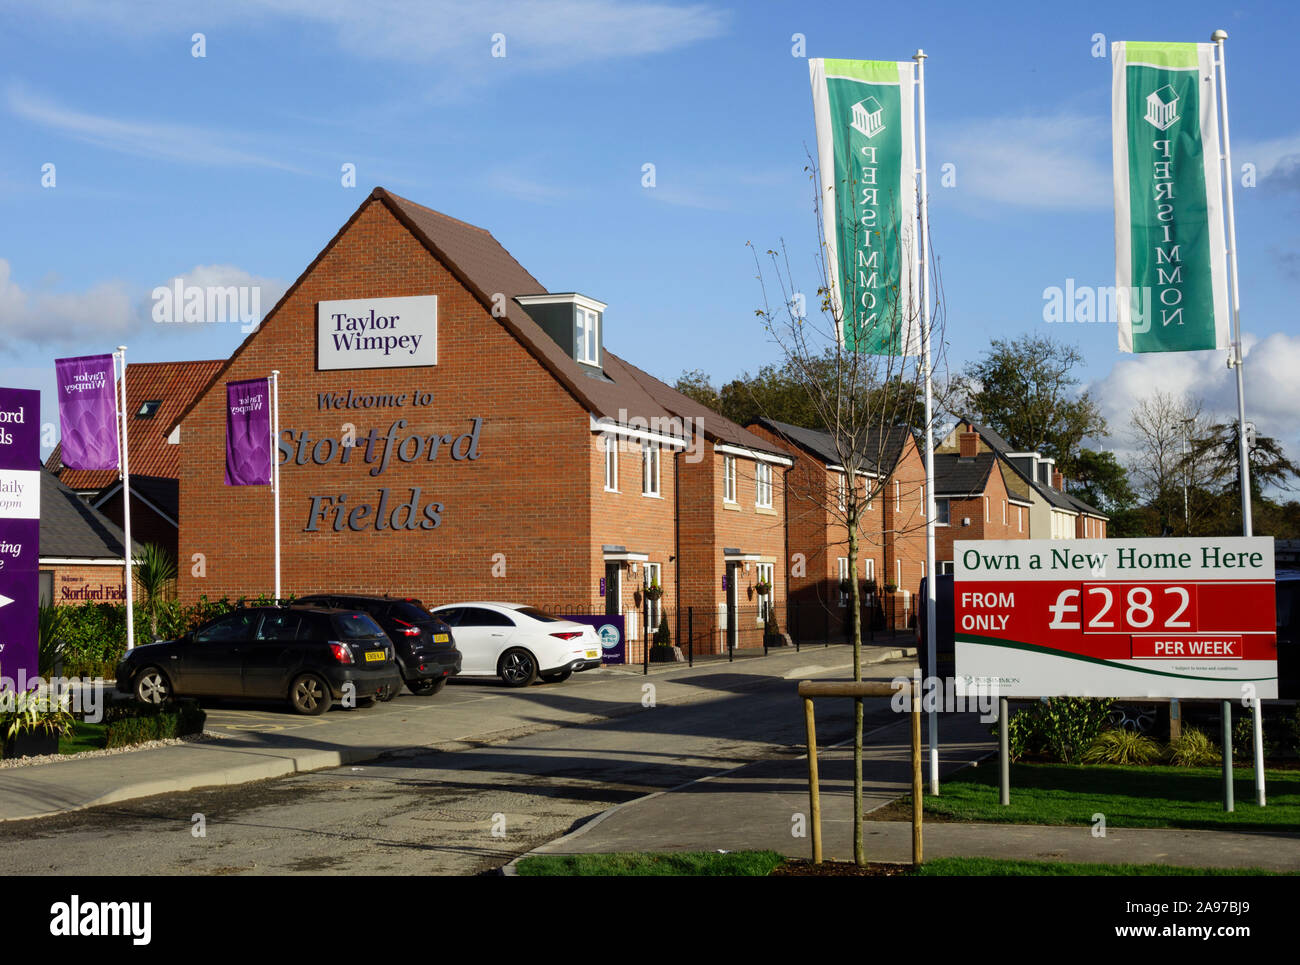 857 Wohnungen an stortfordfields verfügbar, Gehäuse Entwicklung Beschäftigung Land, Geschäfte, kommunalen Einrichtungen in Bishops Stortford, Hertfordshire, England Stockfoto